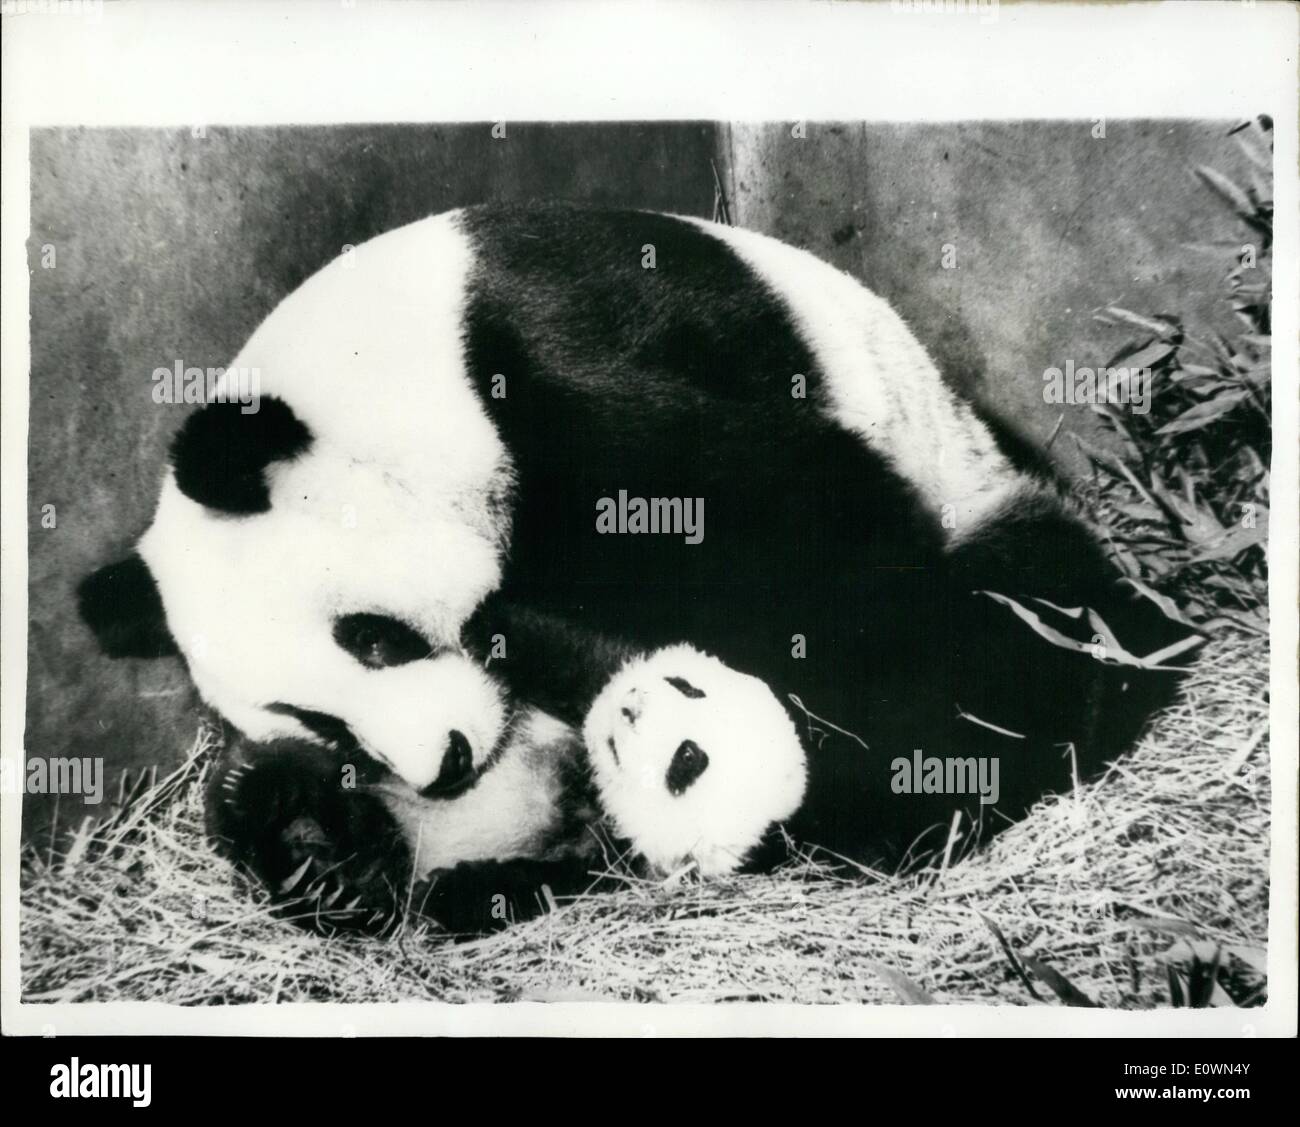 Le 12 décembre 1963 - Premier Panda Géant né en captivité : un panda géant, l'un des rares animaux, est né dans le Zoo de Pékin. C'est le premier panda géant jamais d'être né en captivité, et il est maintenant plus de deux mois. Le zoo de Pékin a eu plus de 10 pandas géants, mais n'a que récemment tenté de les élever. Grand Zoo d'Europe et d'Amérique ont eu une dizaine de pandas géants mais ont tenté de les élever en vain. Banque D'Images